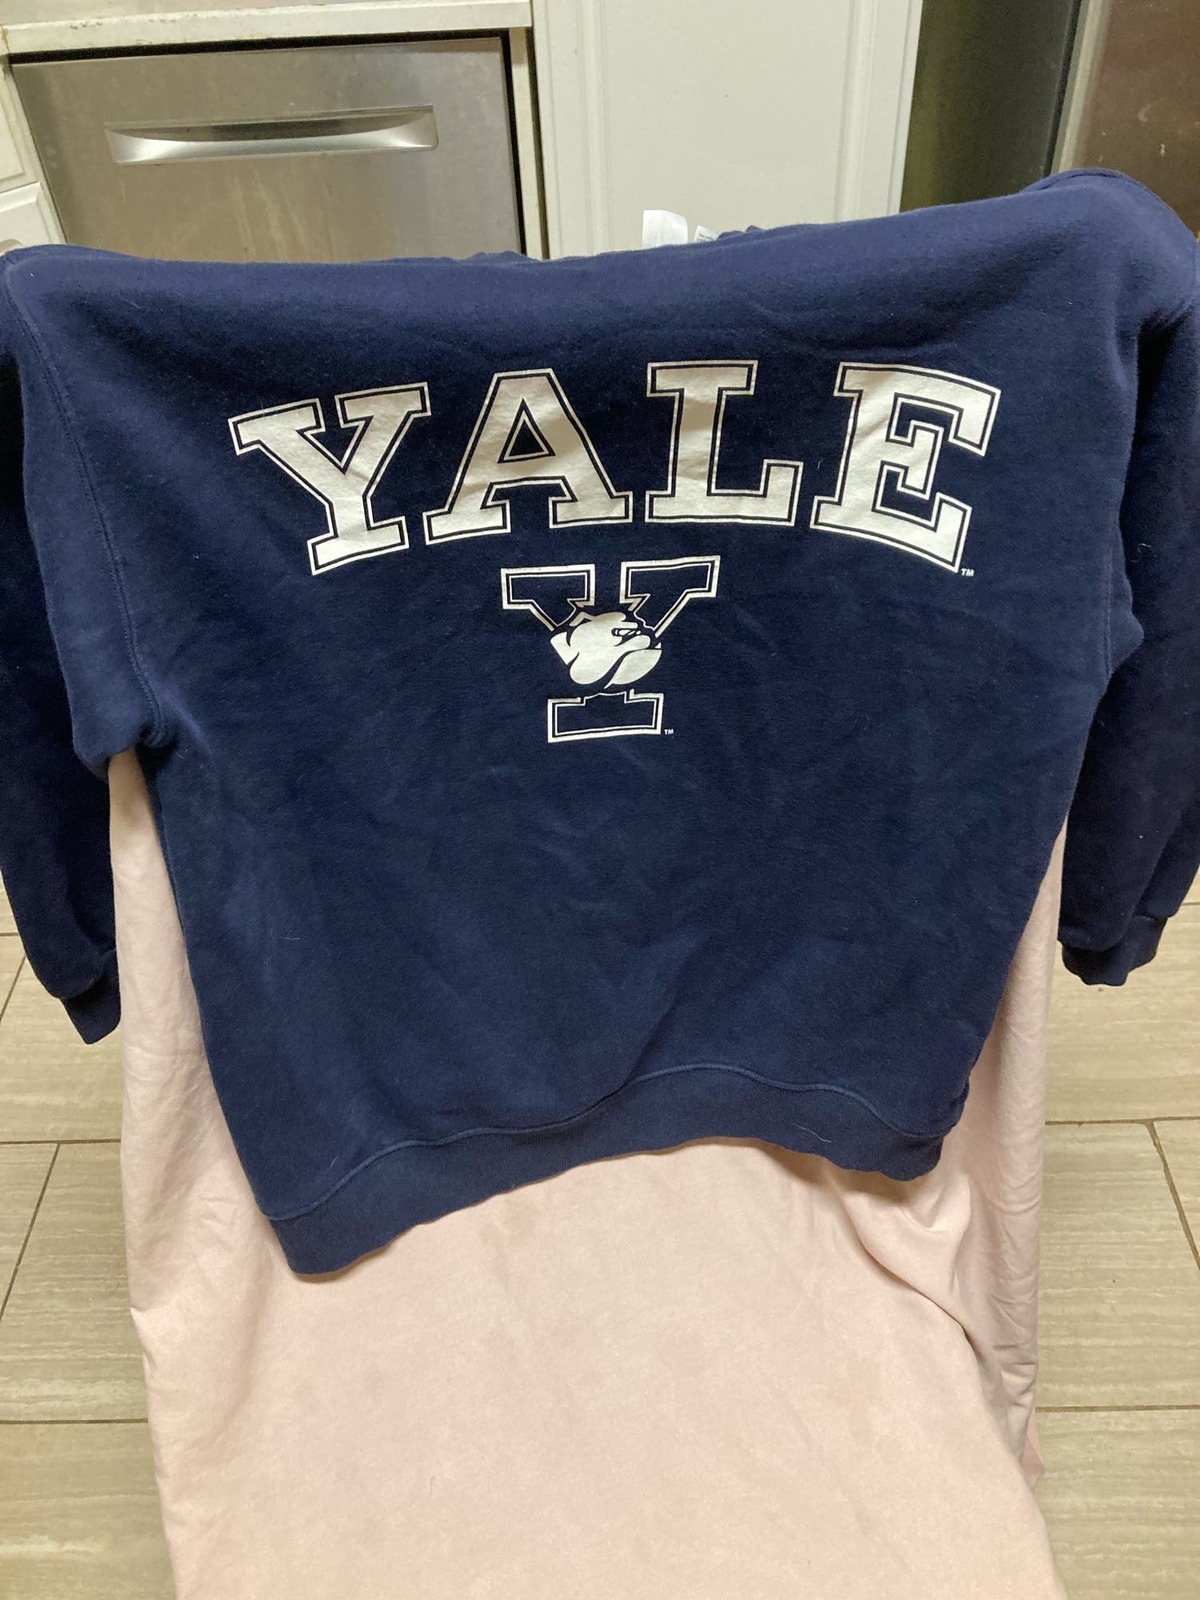 Primary image for Yale University Sweatshirt Size S